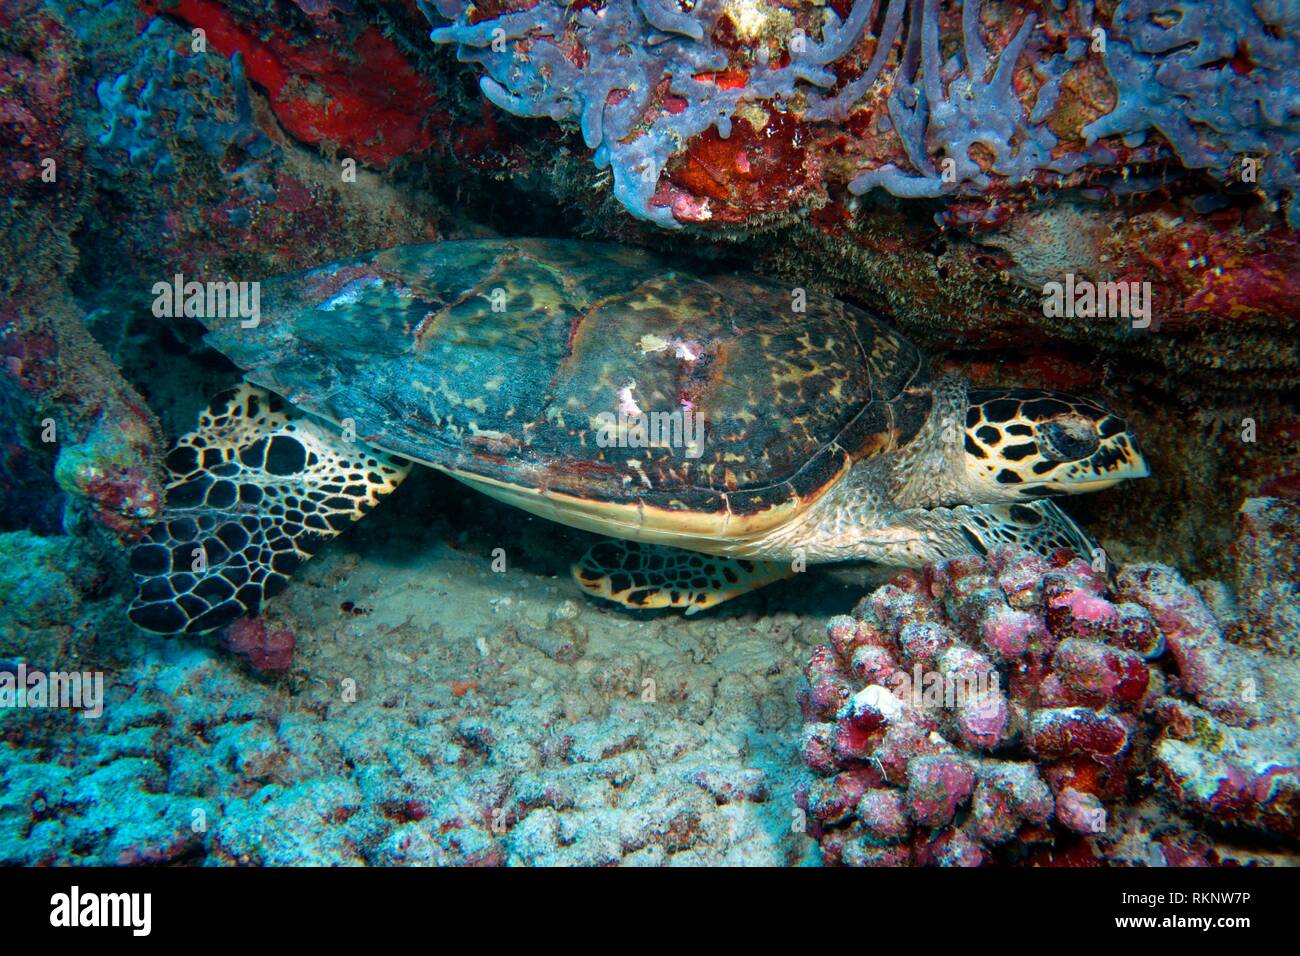 Echte Karettschildkröte (Eretmochelys imbricata) Festlegung auf dem Riff zwischen Korallen, Indischer Ozean, Malediven, Südasien. Stockfoto